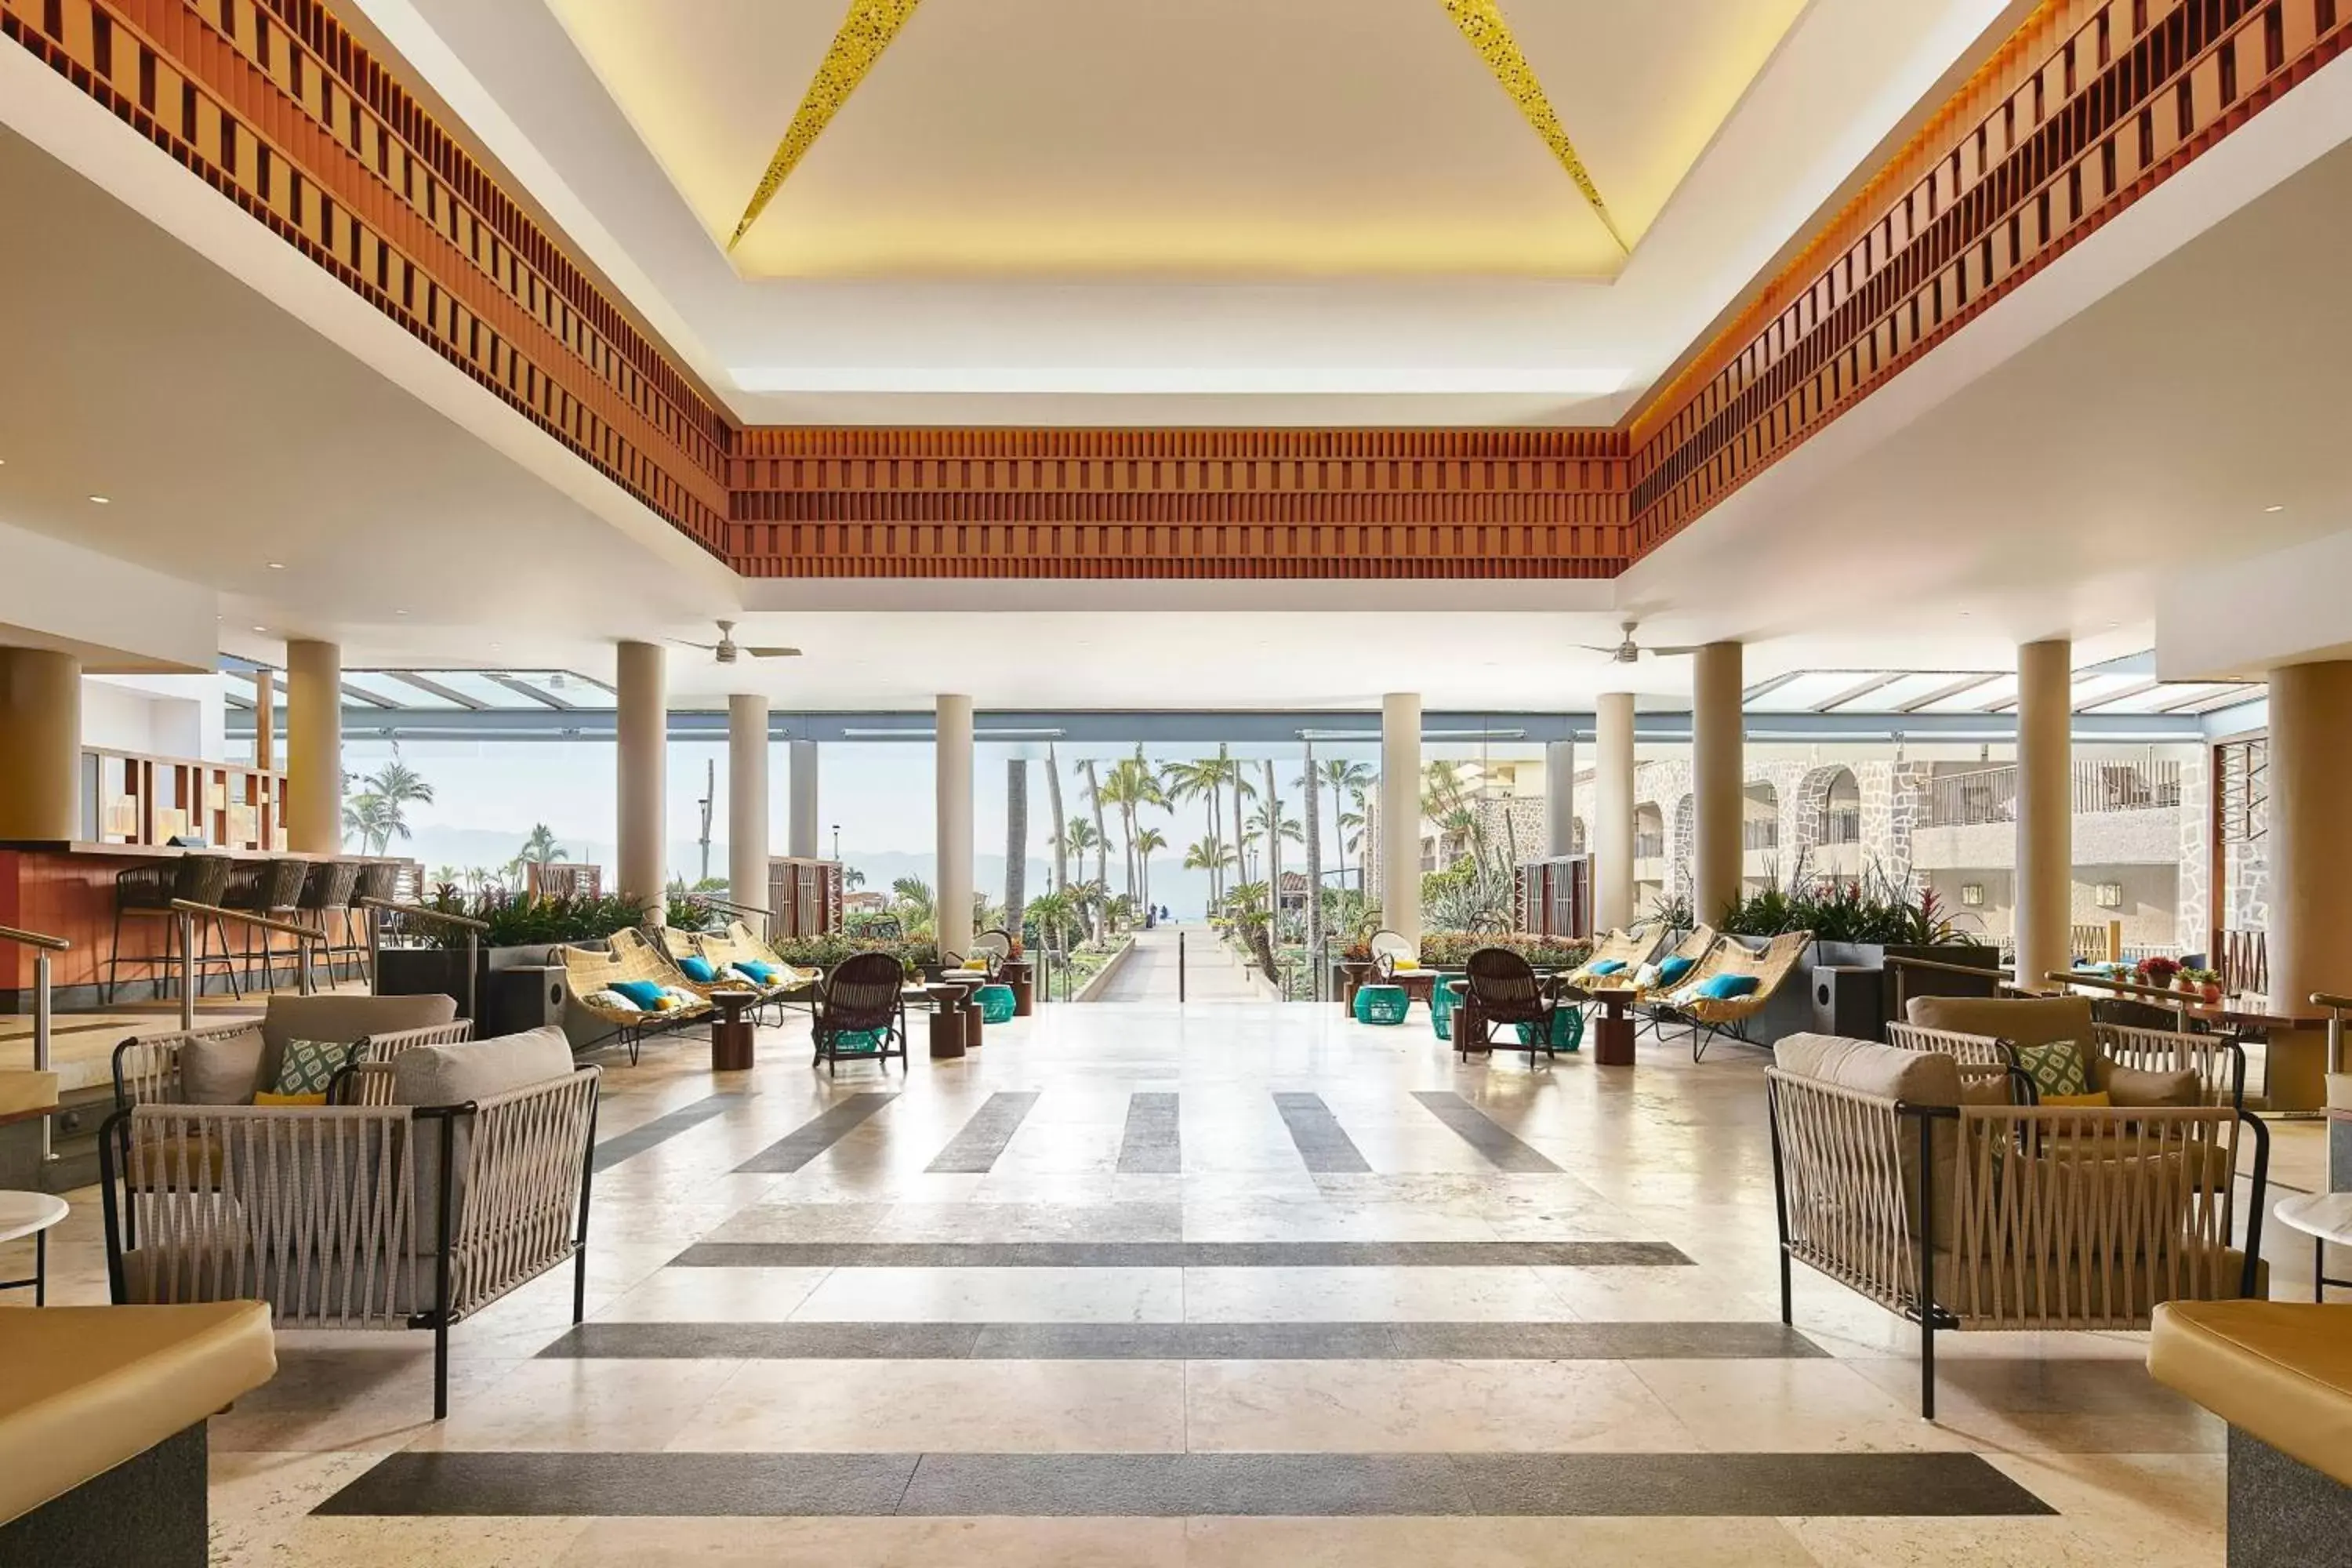 Lobby or reception, Restaurant/Places to Eat in Marriott Puerto Vallarta Resort & Spa